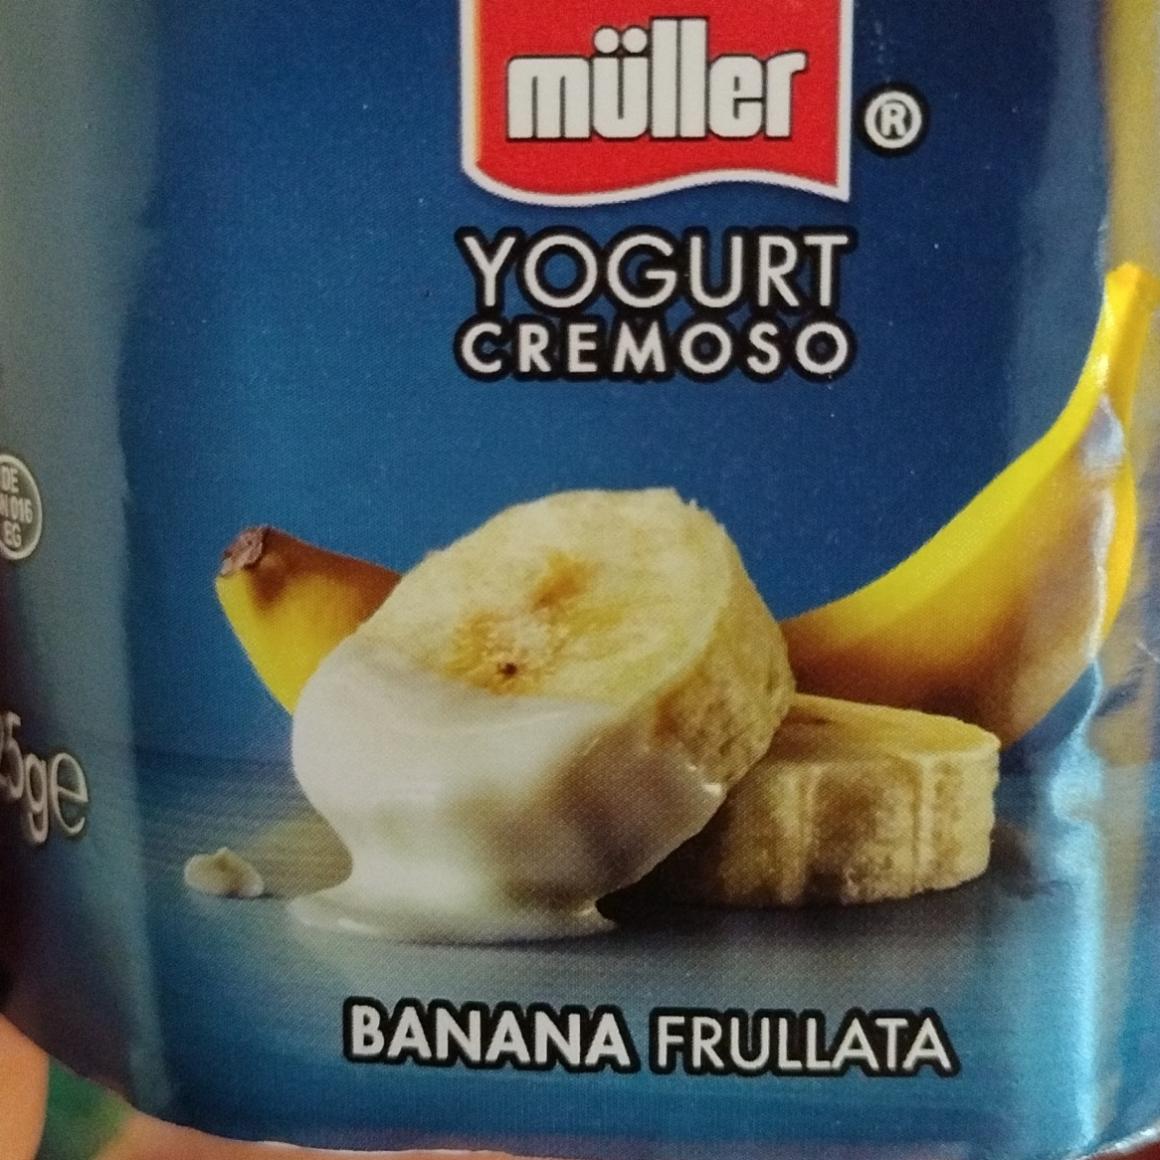 Fotografie - Yogurt cremoso Banana Frullata Müller